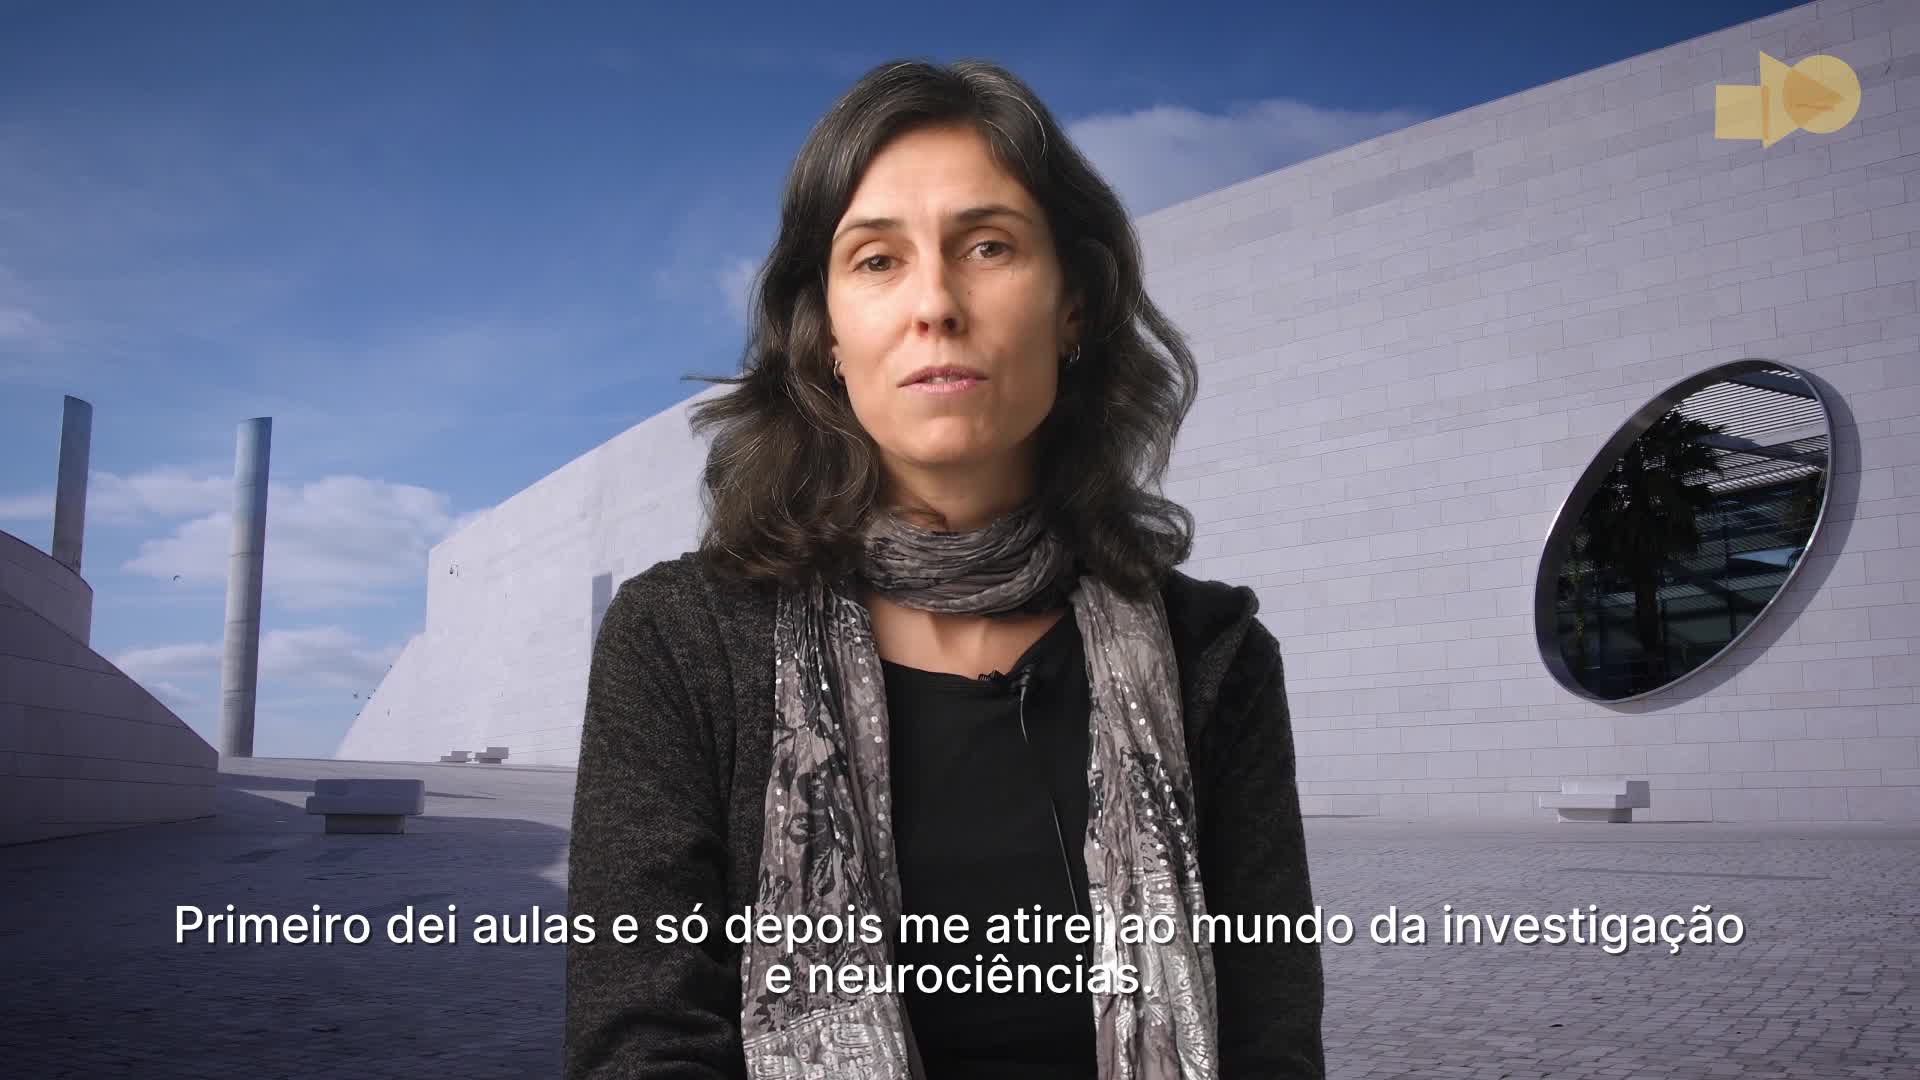  Women in STEM - Clara Ferreira